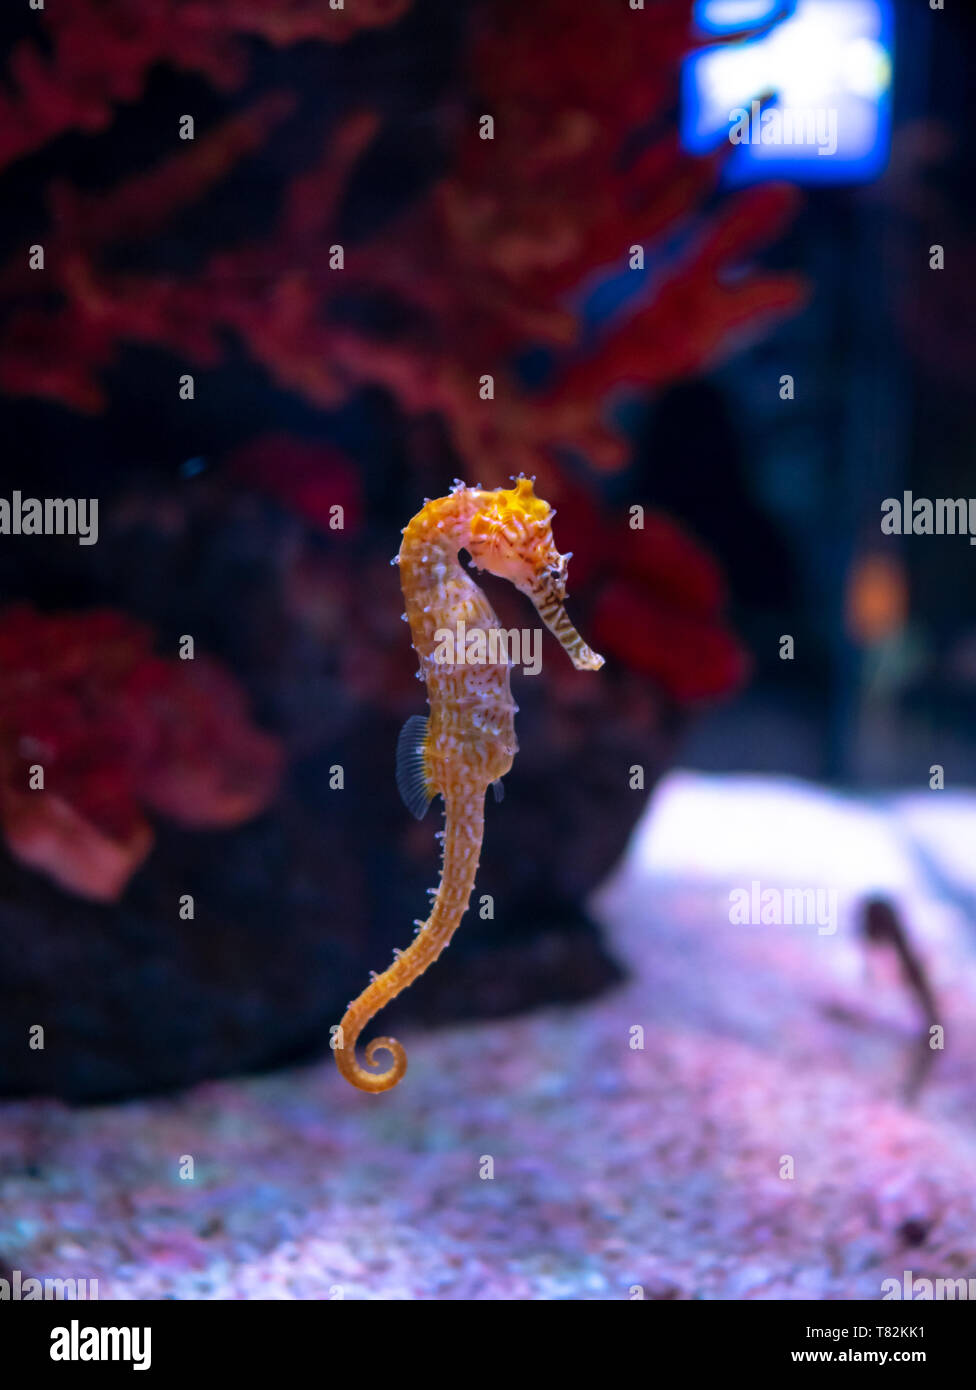 Cheval de mer dans l'aquarium. Ces hippocampes vivent dans les mers chaudes autour de l'Indonésie, les Philippines et la Malaisie. Ils sont généralement de couleur jaune et d'avoir un b Banque D'Images